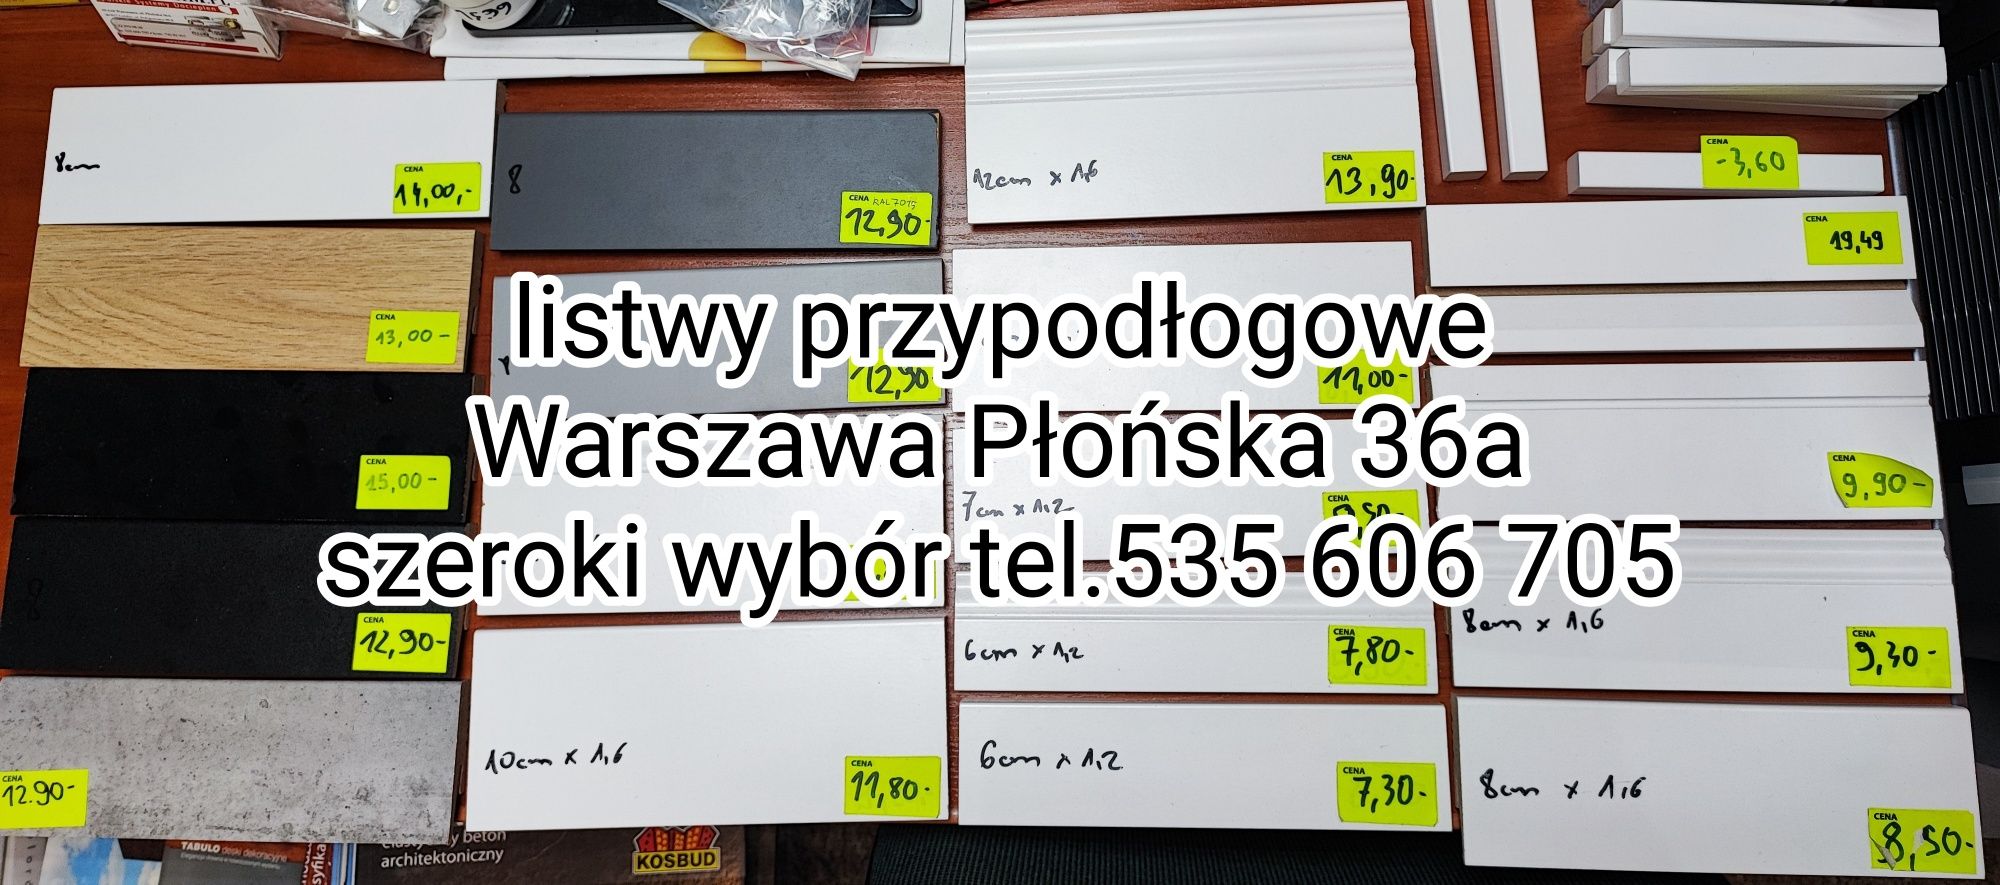 Listwa przypodłogowa MDF biała SKL8 8x1,6x207cm cena za mb Warszawa